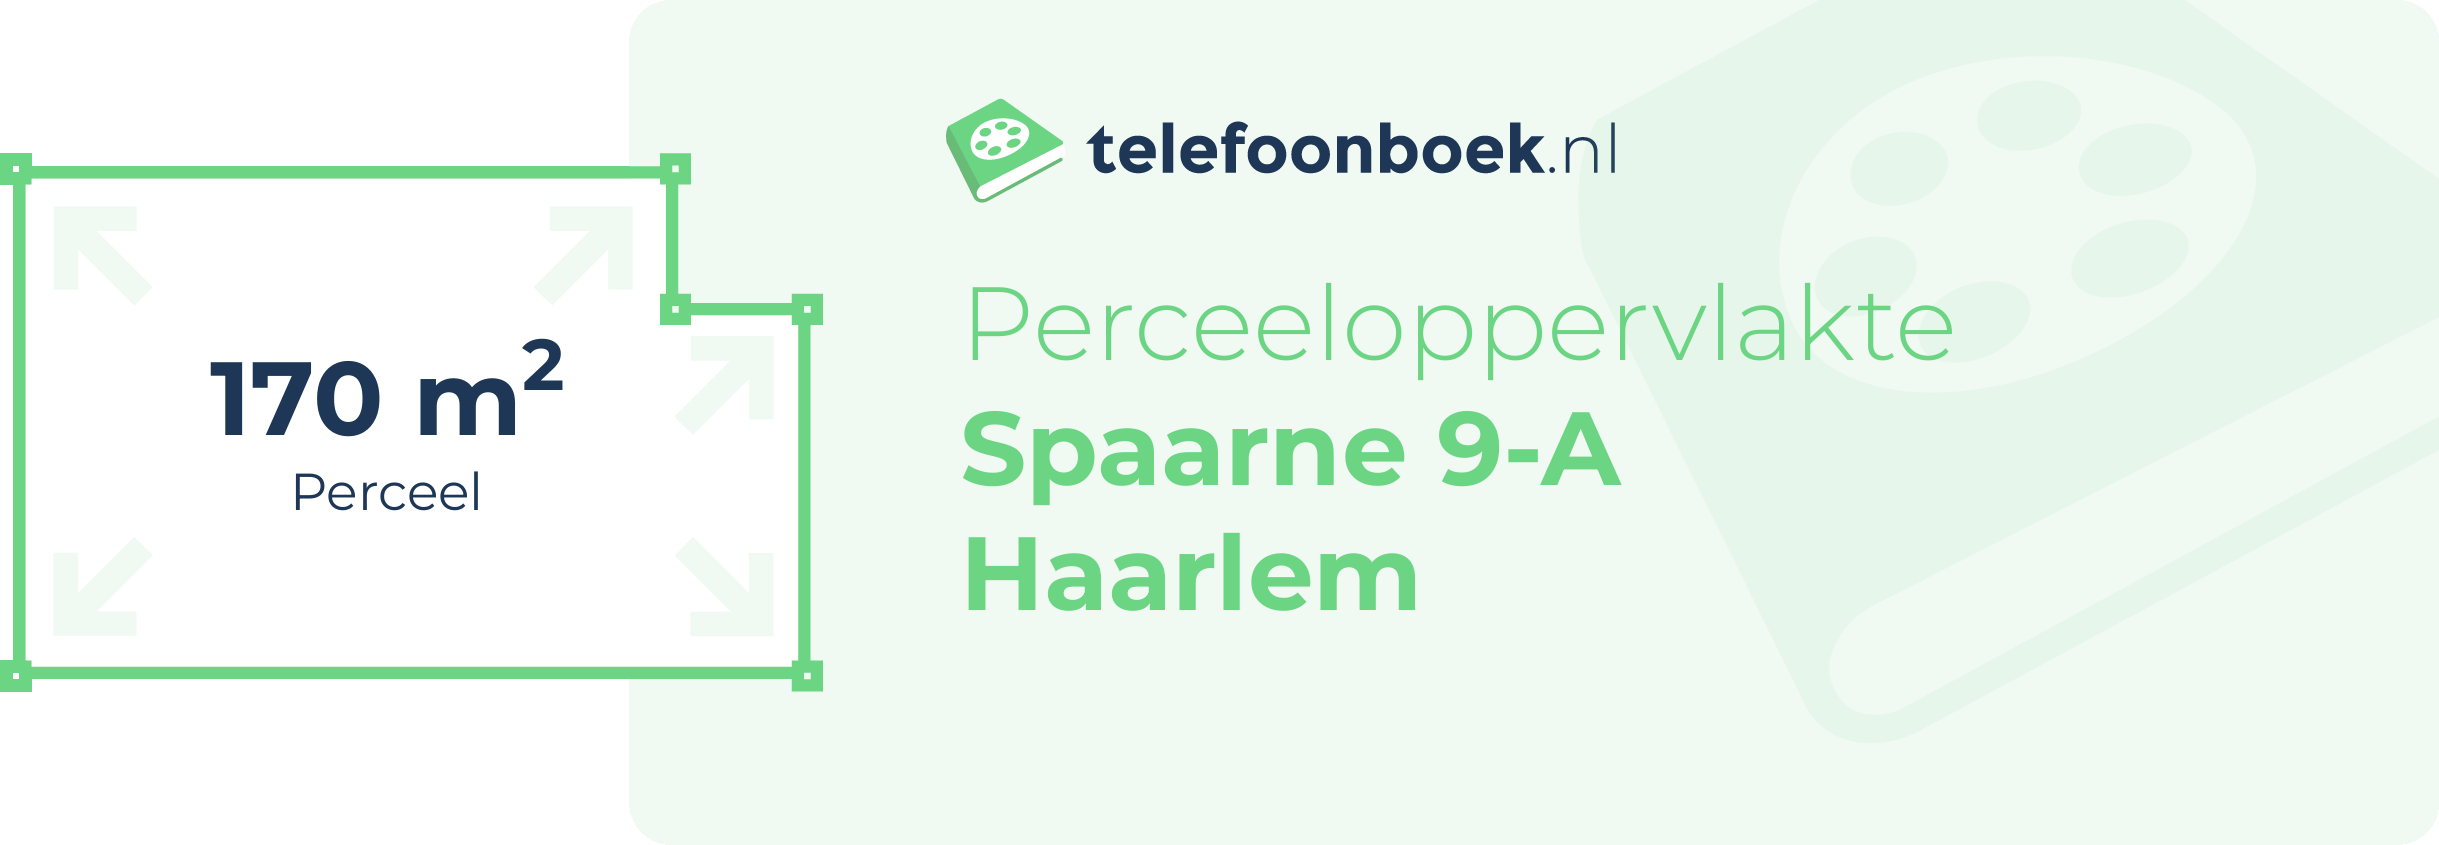 Perceeloppervlakte Spaarne 9-A Haarlem